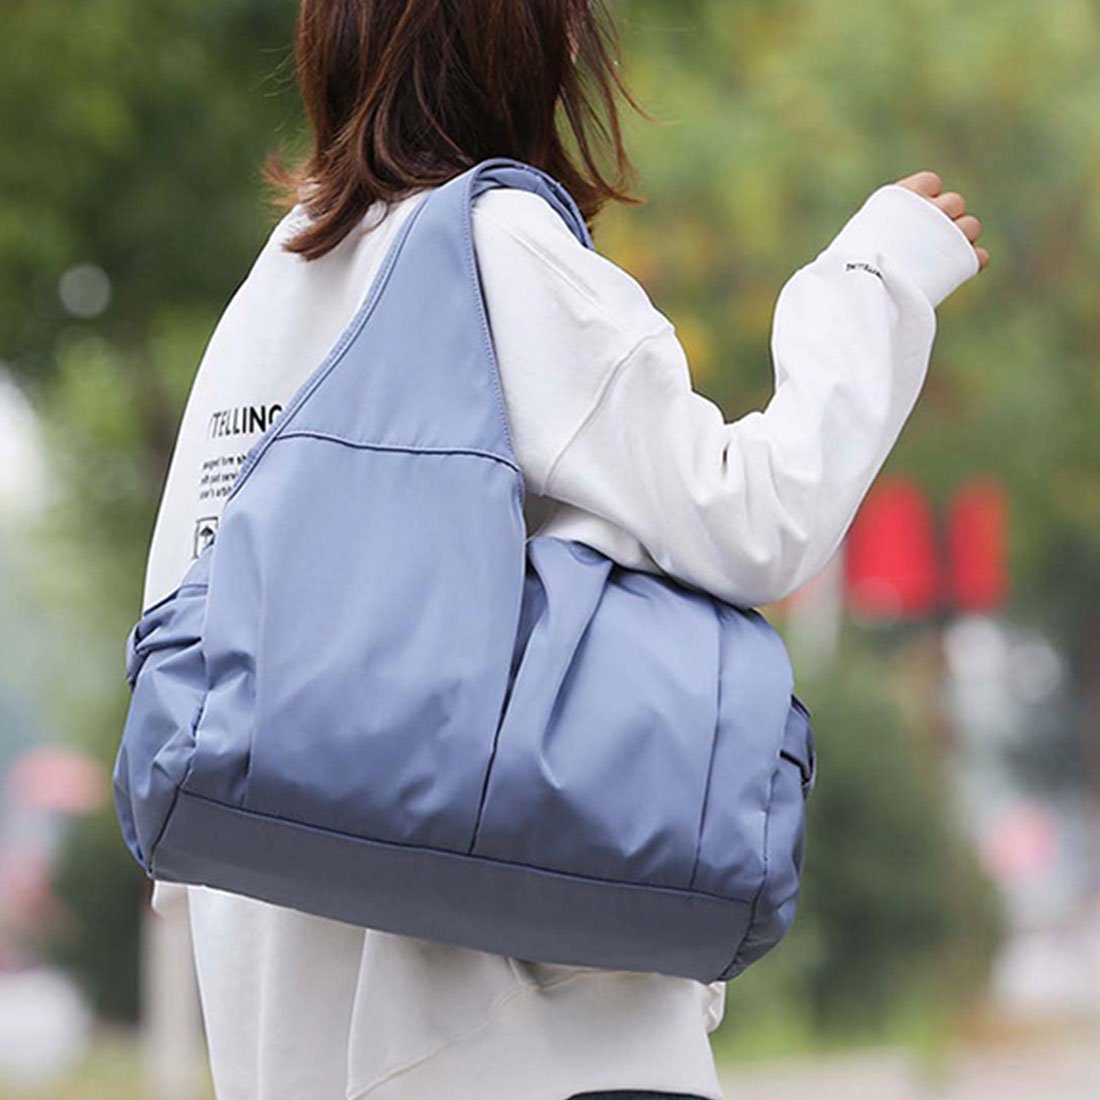 Blau Sporttasche für Kapazität, großer mit DÖRÖY Yoga,Reisetasche Sporttasche Damenhandtasche